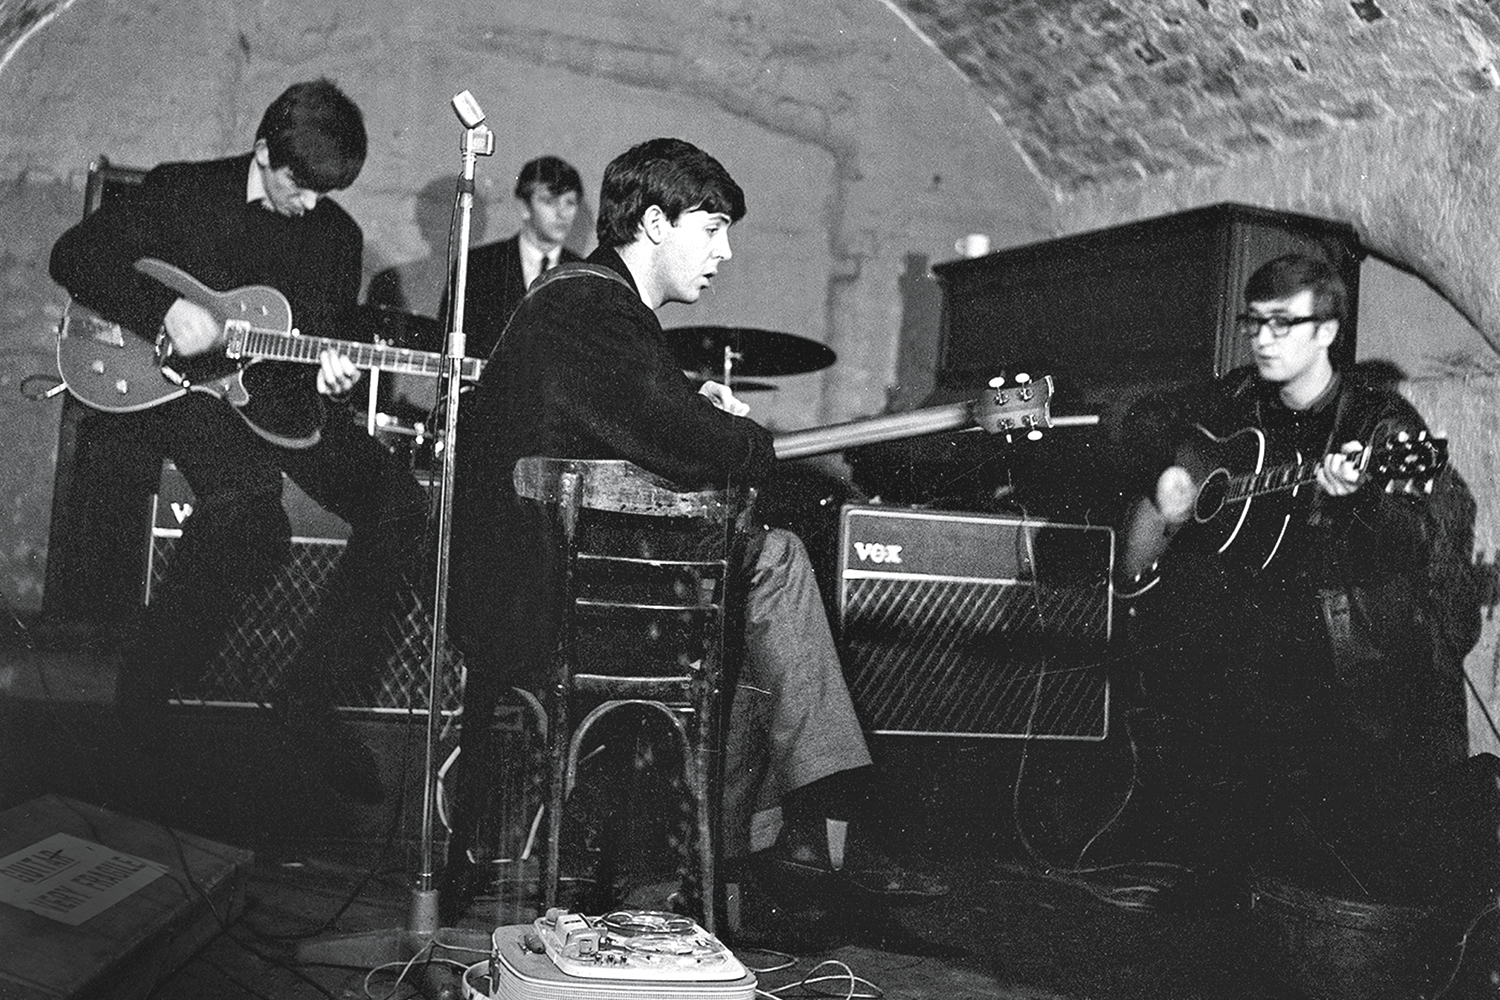 INÍCIO DO SONHO - Cavern Club: a casa foi o palco dos primeiros shows dos Beatles, nos anos 60 -